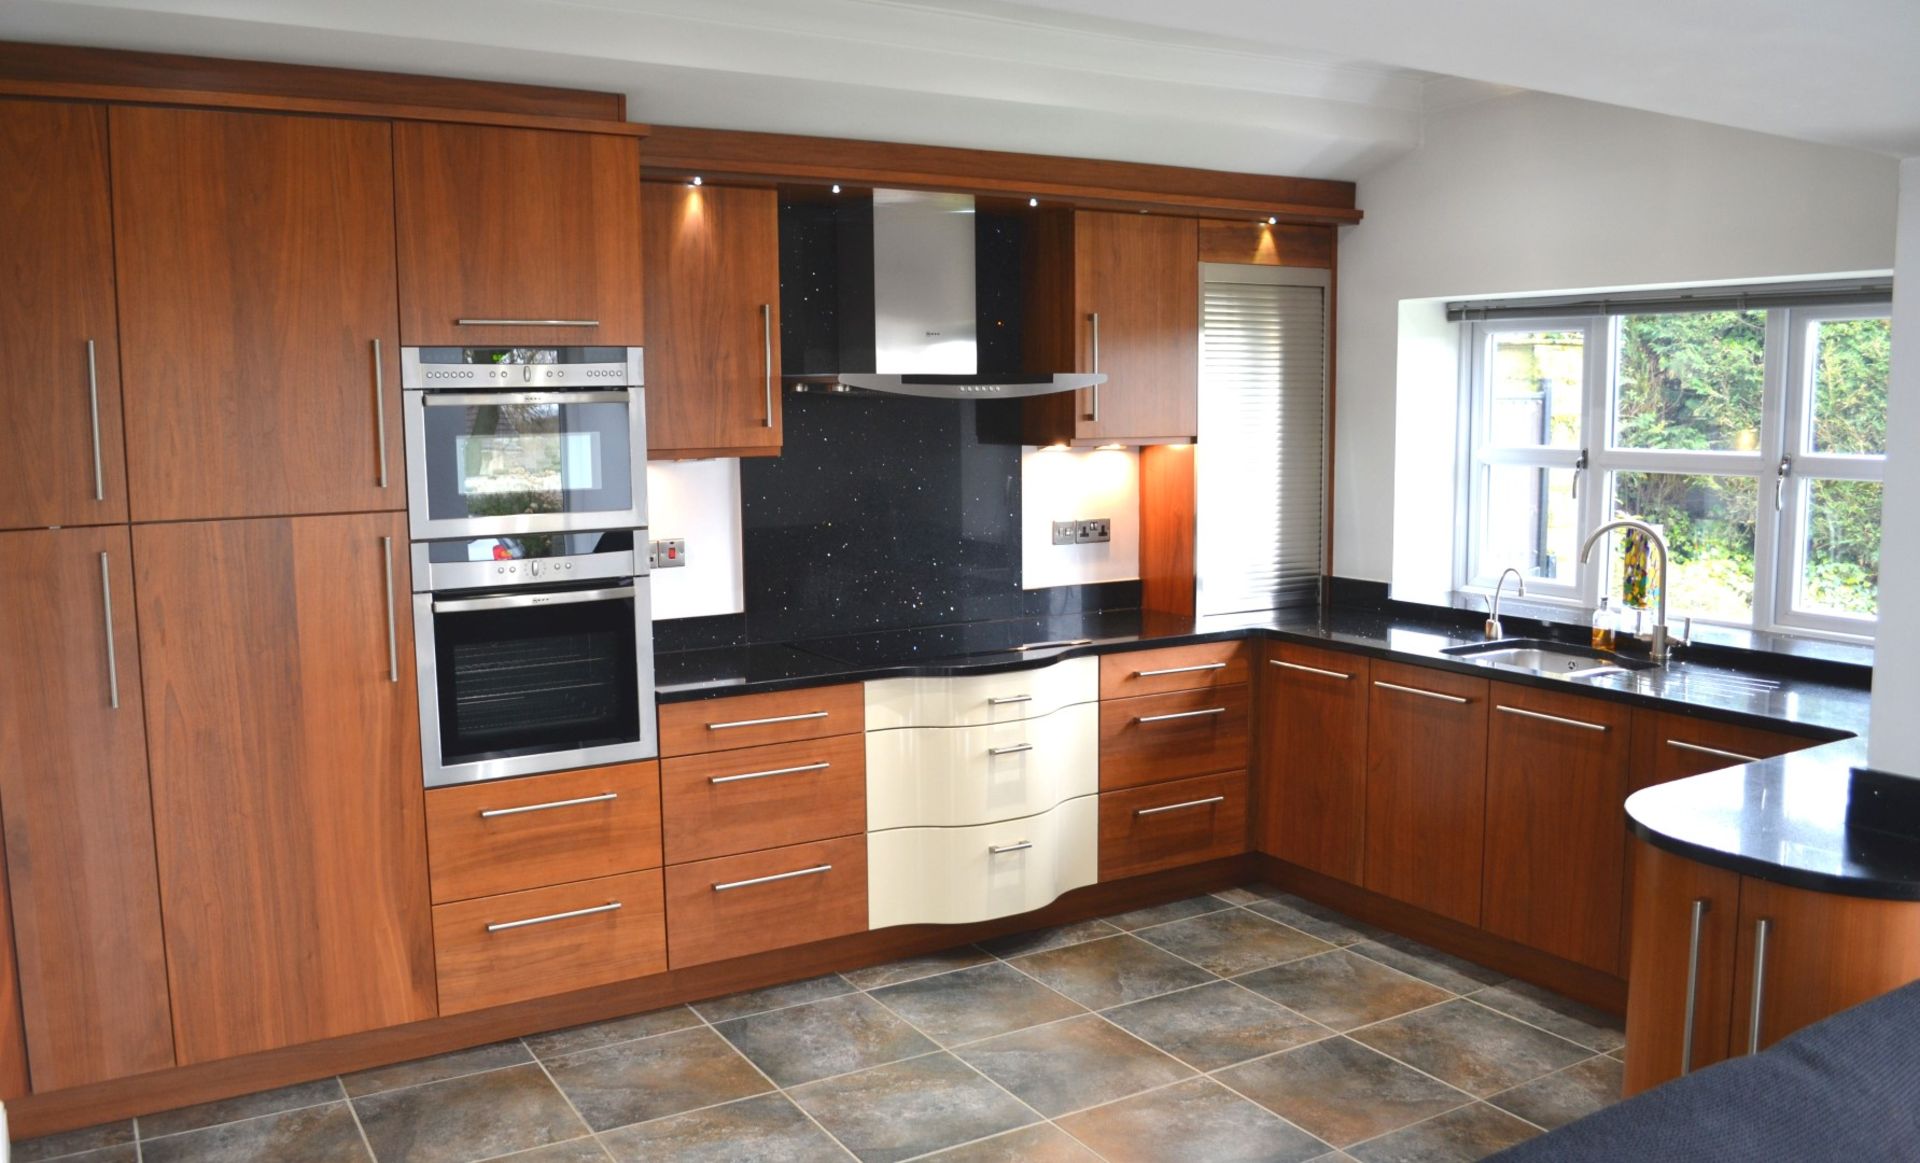 1 x Kitchen Design Bespoke Fitted Kitchen With Silestone Worktops & Neff Appliances - Superb